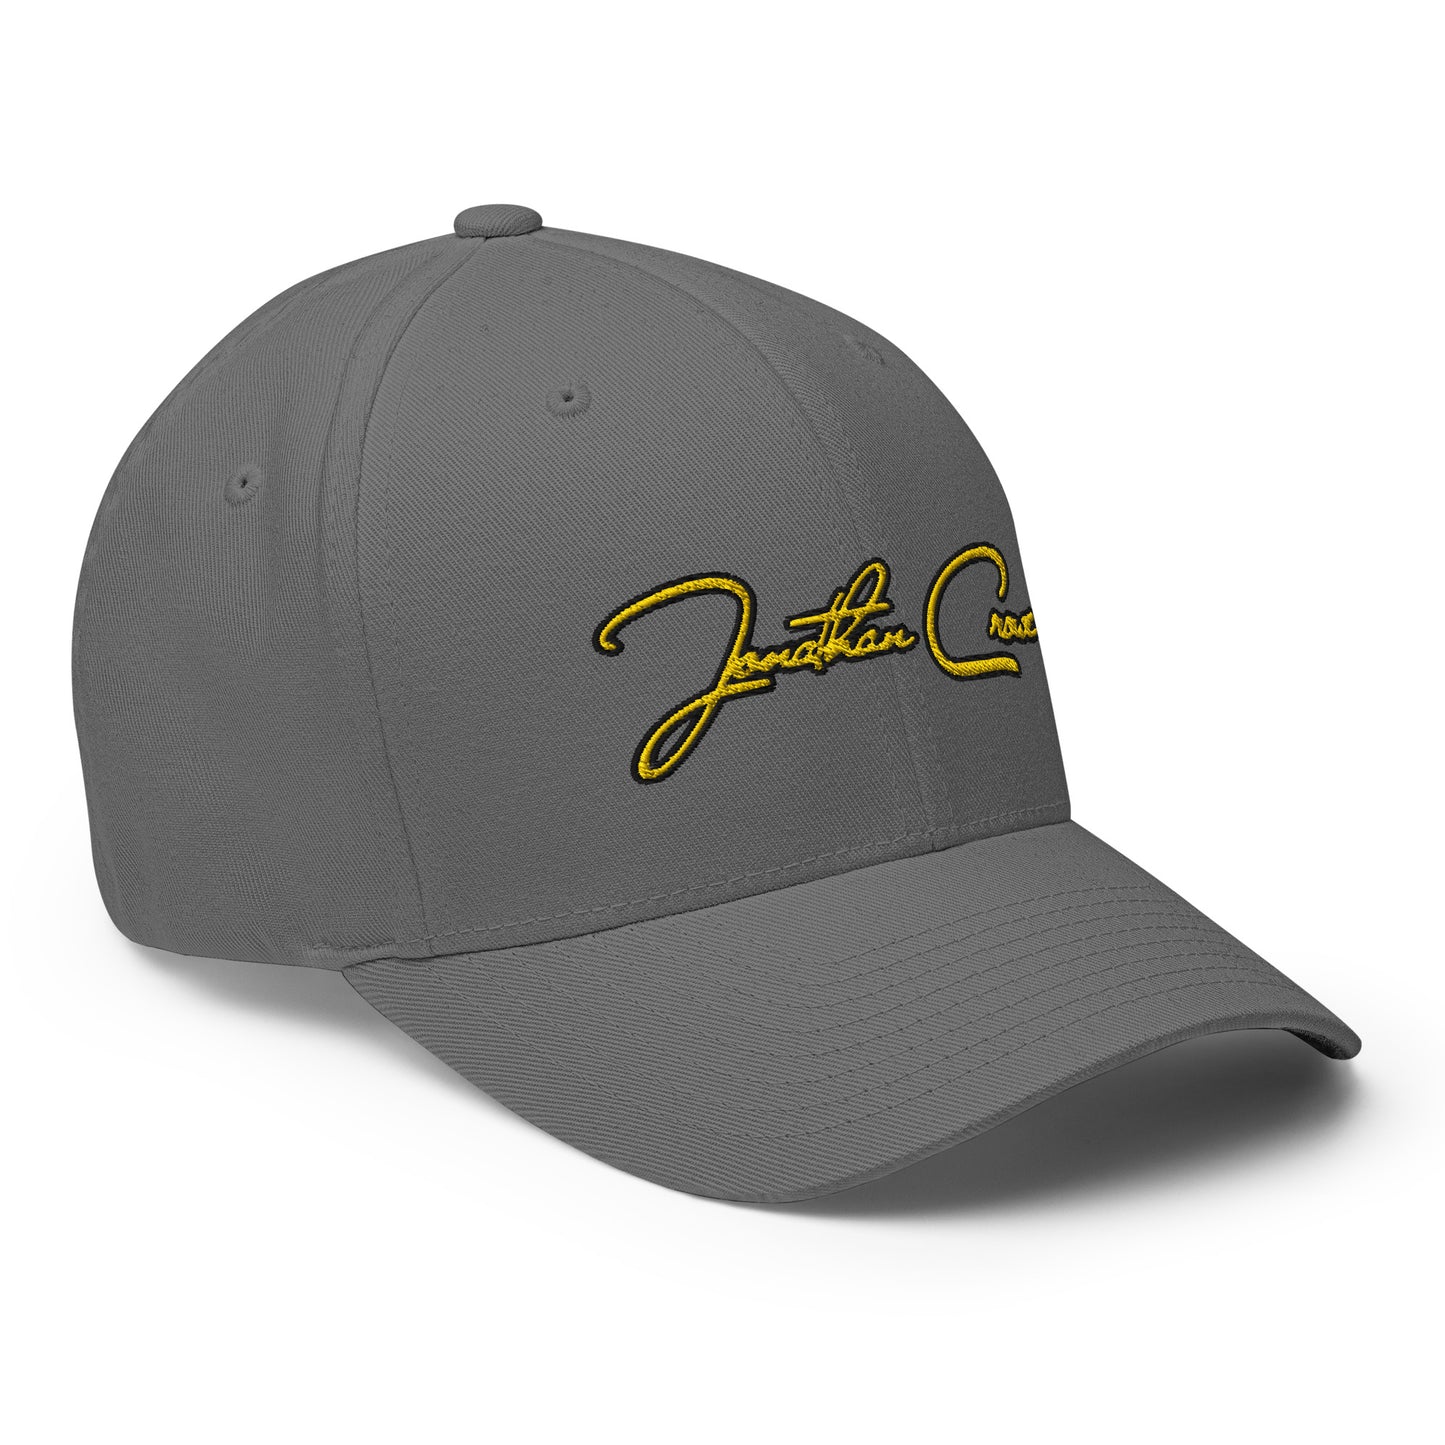 JC Signature Cap